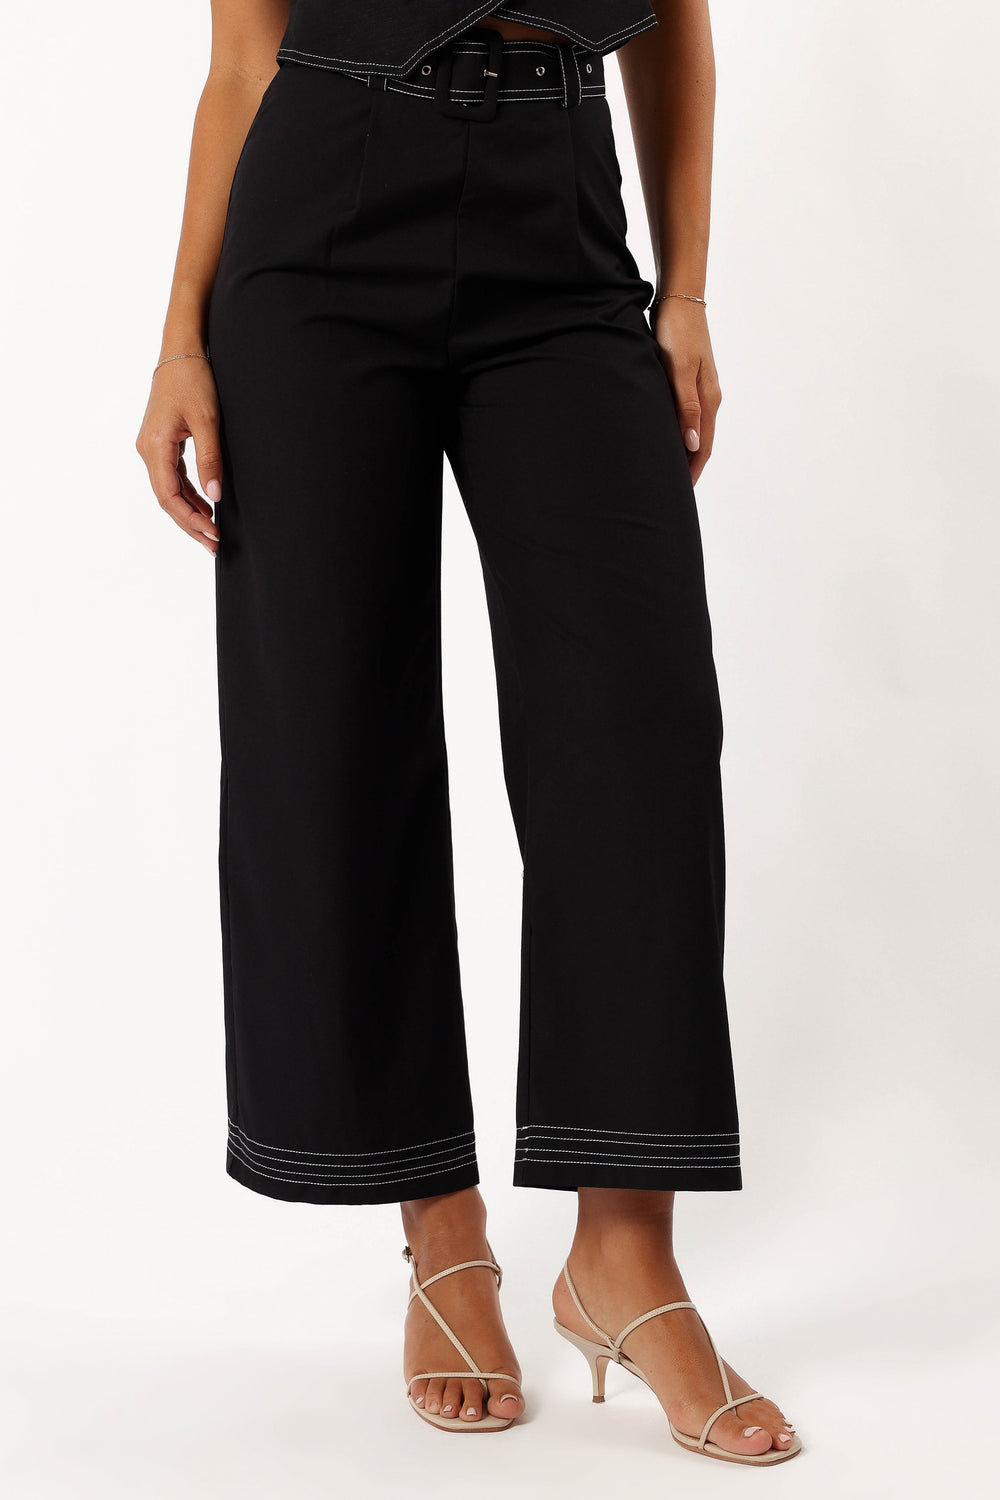 BOTTOMS @Dellia Contrast Stitch Pants - Black